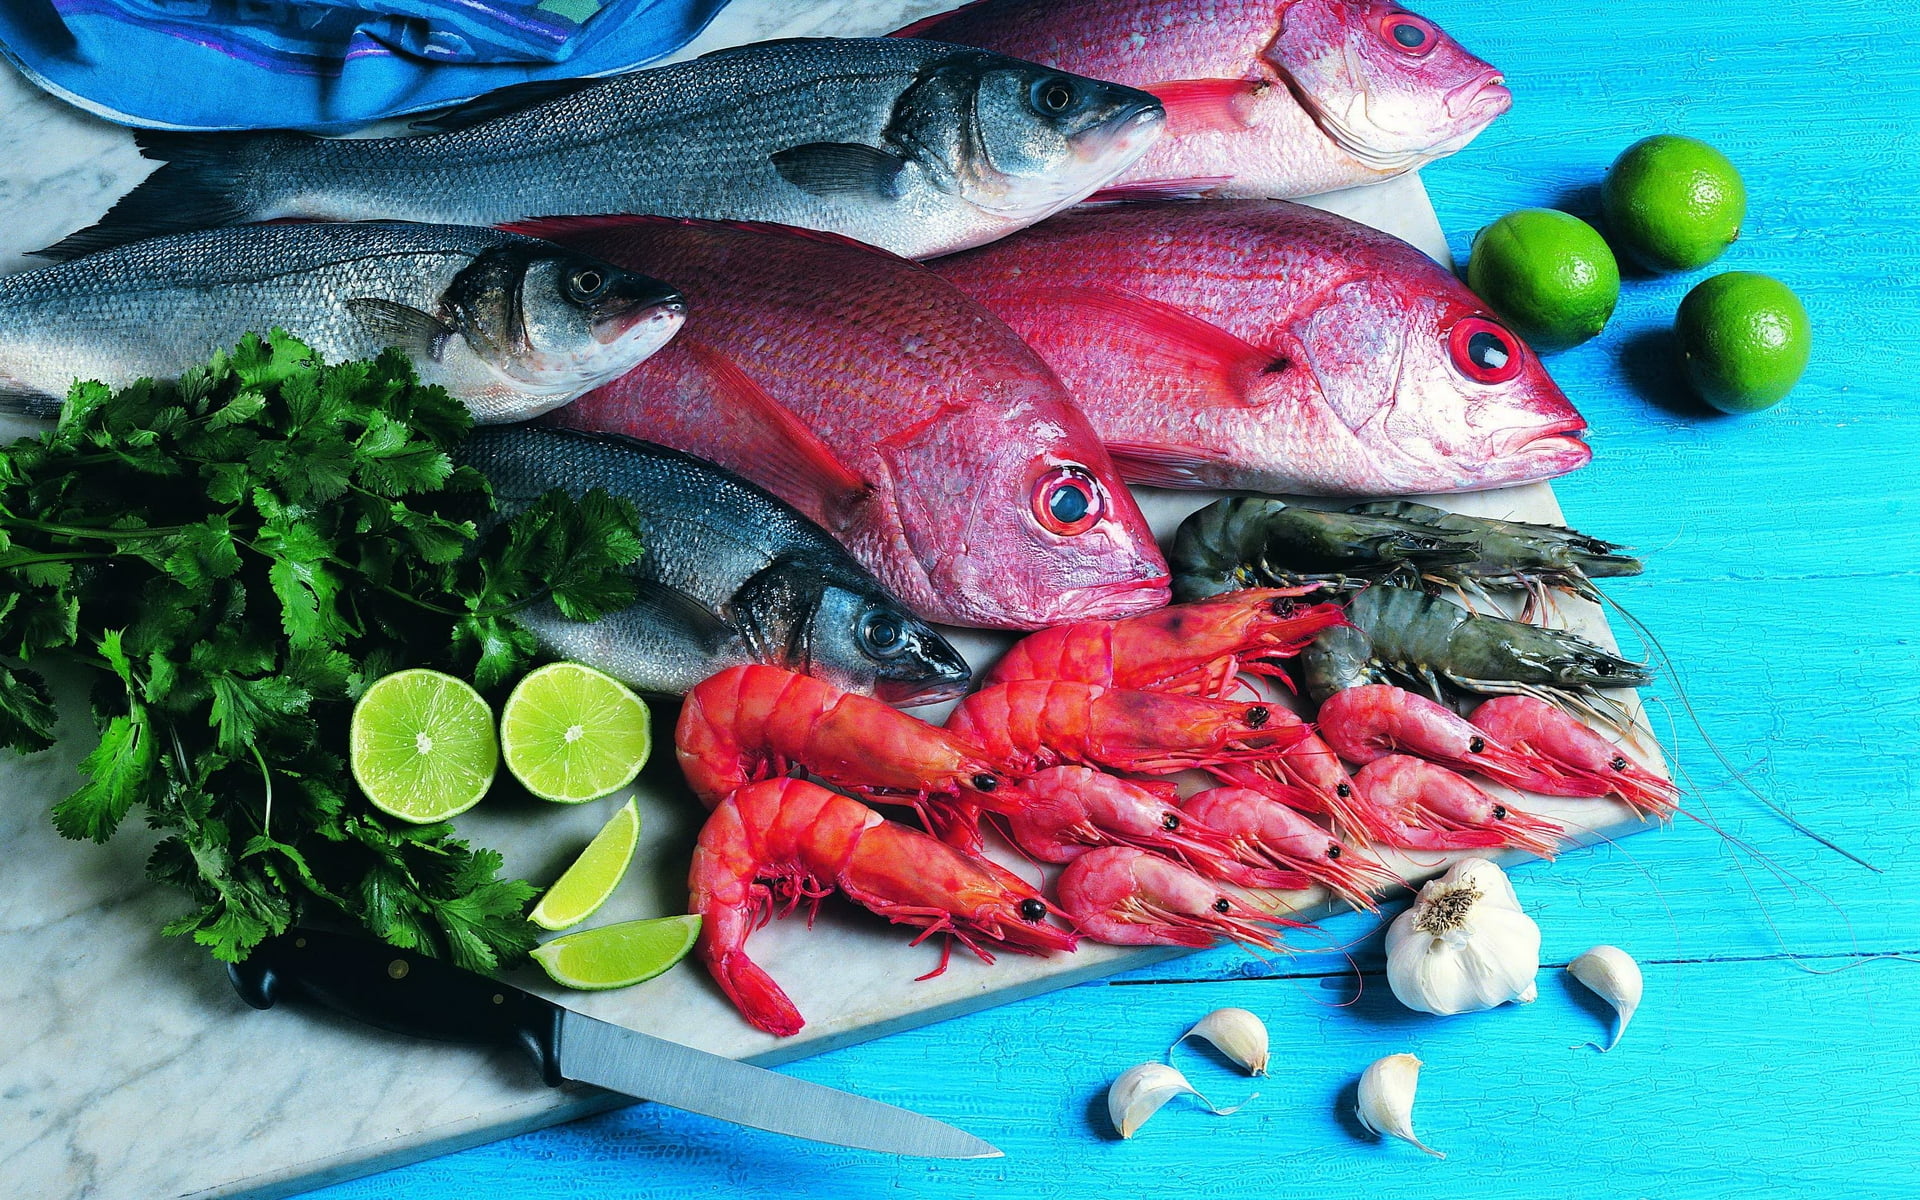 أسعار المأكولات البحرية في سوق العبور الخميس 13 أكتوبر (سمك - جمبري - استاكوزا - كاليماري) بسعر الجملة